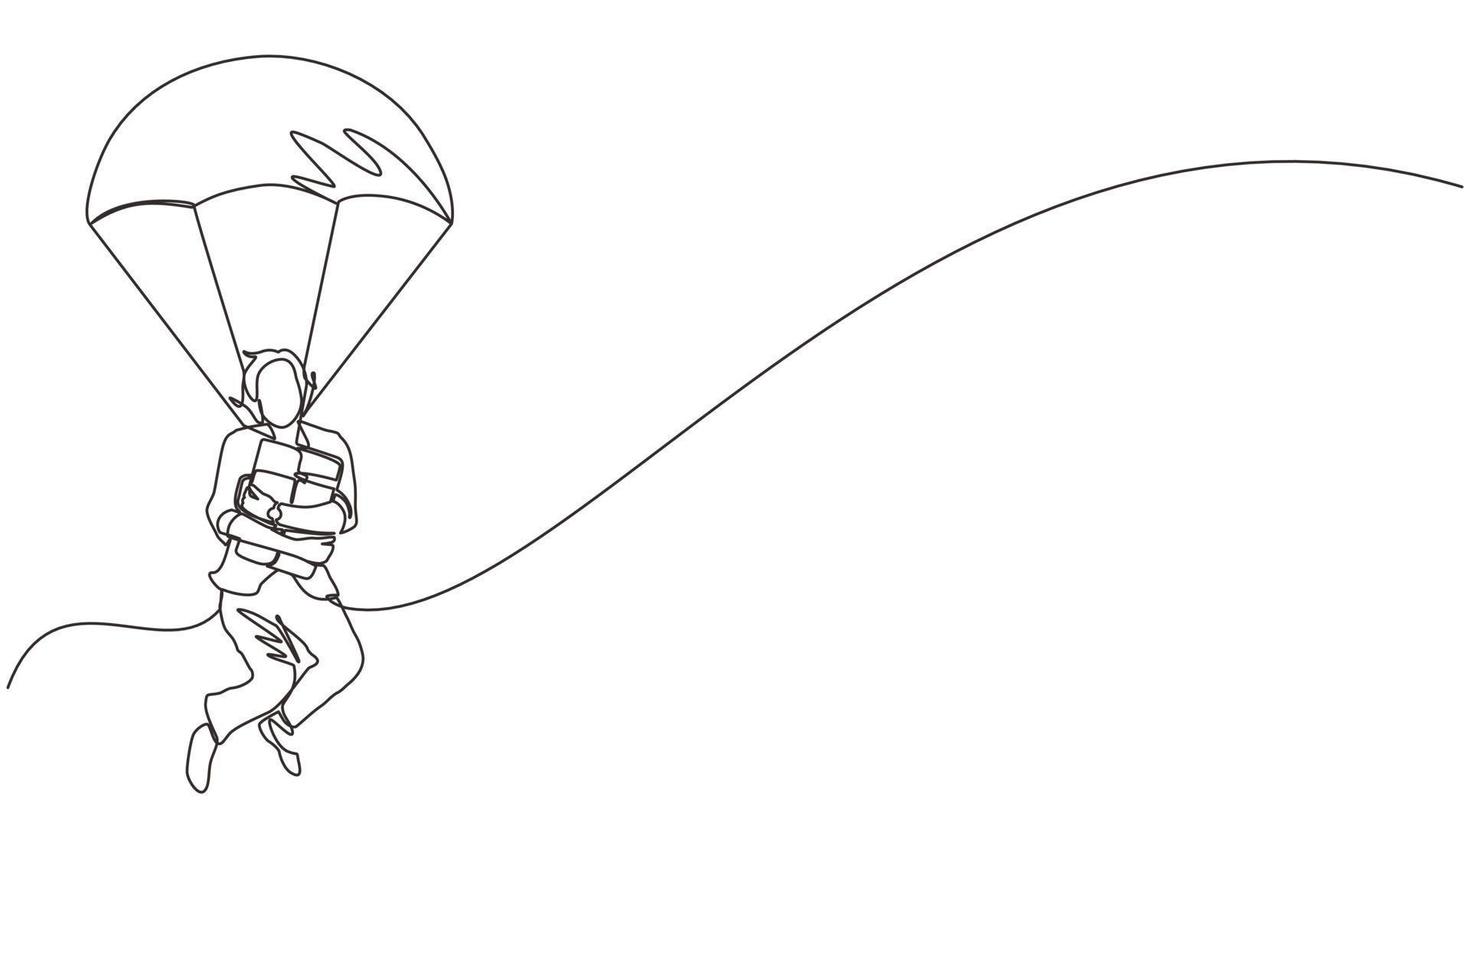 mujer de negocios de dibujo de una sola línea sosteniendo maletín y saltando con paracaídas. gente de negocios paracaidista riesgo peligro y concepto de seguridad. ilustración de vector gráfico de diseño de dibujo de línea continua